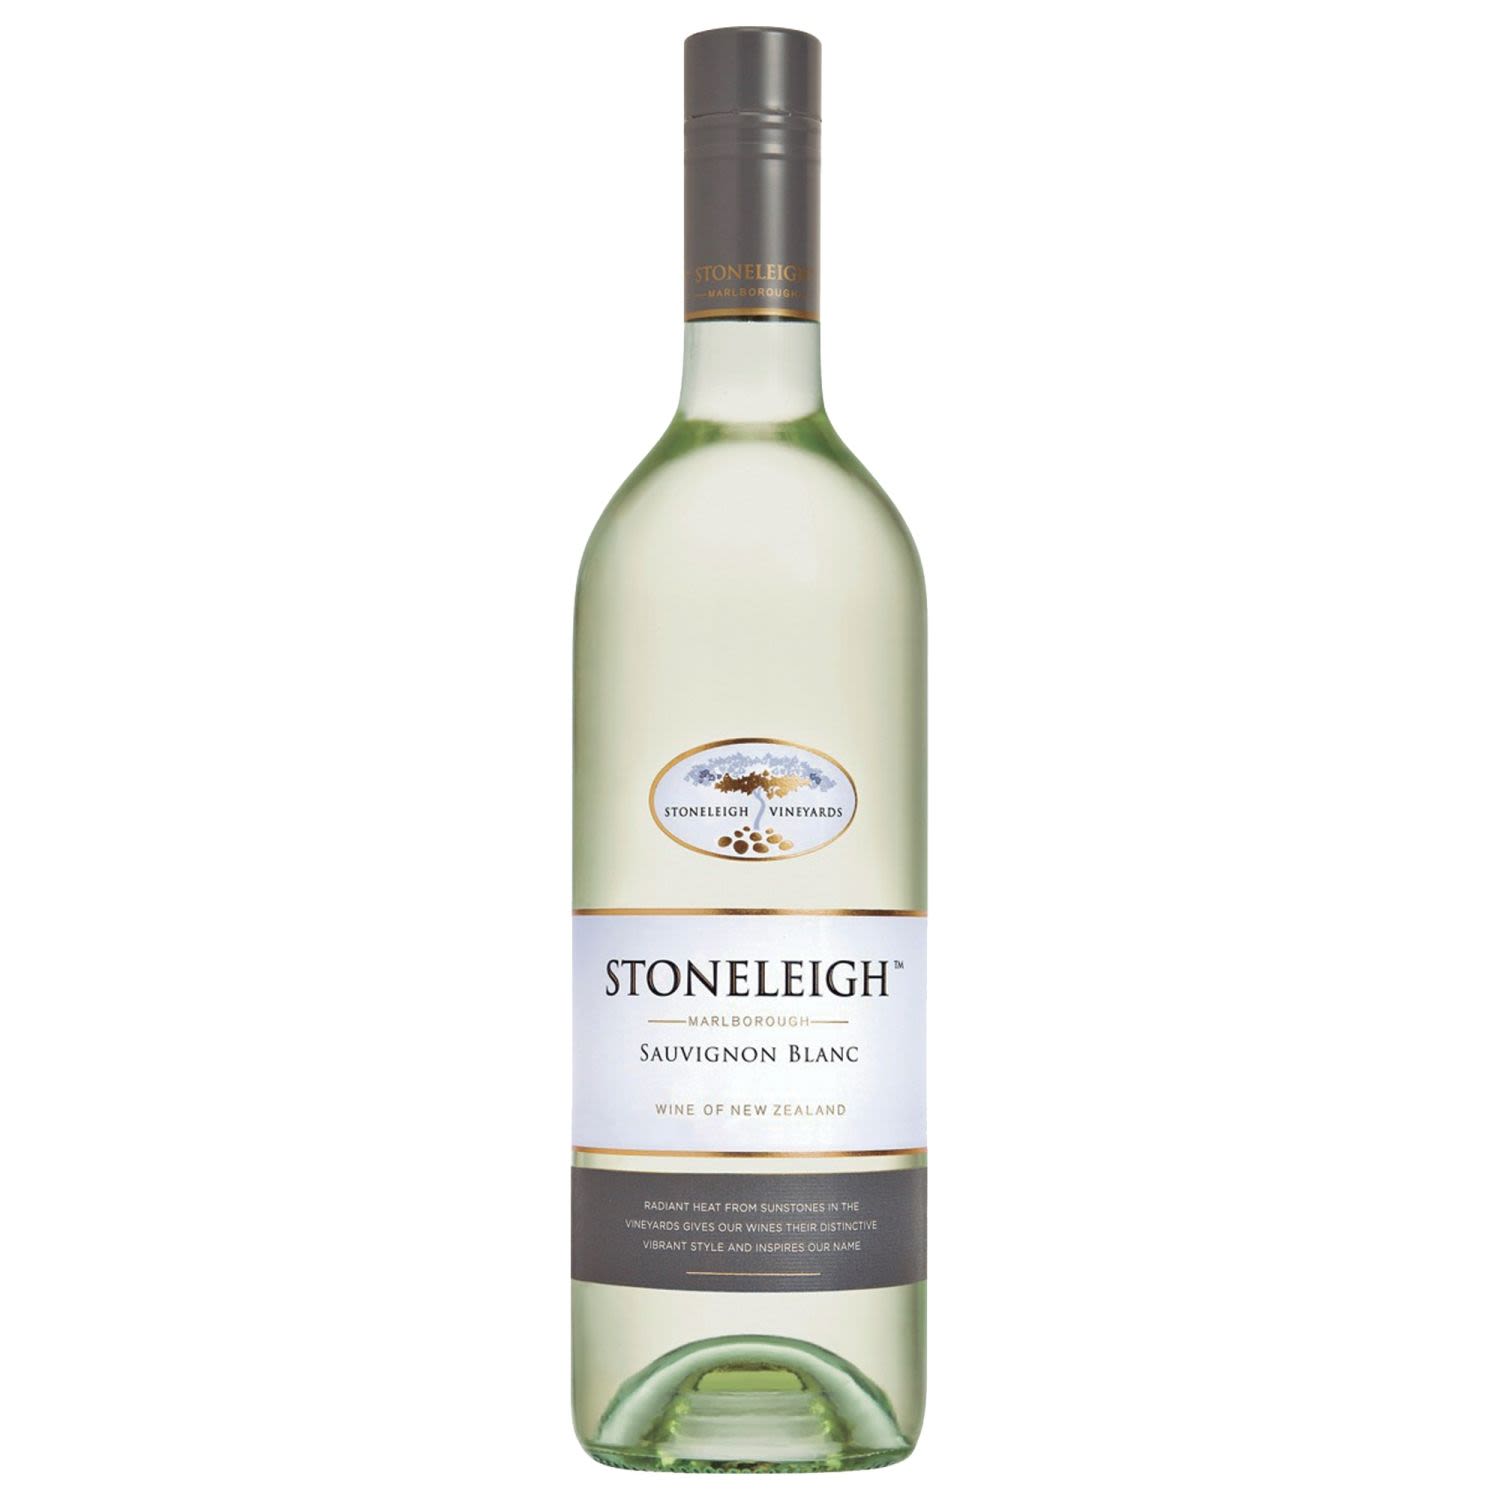 Stoneleigh Sauvignon Blanc<br /> <br />Alcohol Volume: 13.00%<br /><br />Pack Format: Bottle<br /><br />Standard Drinks: 7.7</br /><br />Pack Type: Bottle<br /><br />Country of Origin: New Zealand<br /><br />Region: Marlborough<br /><br />Vintage: '2018<br />